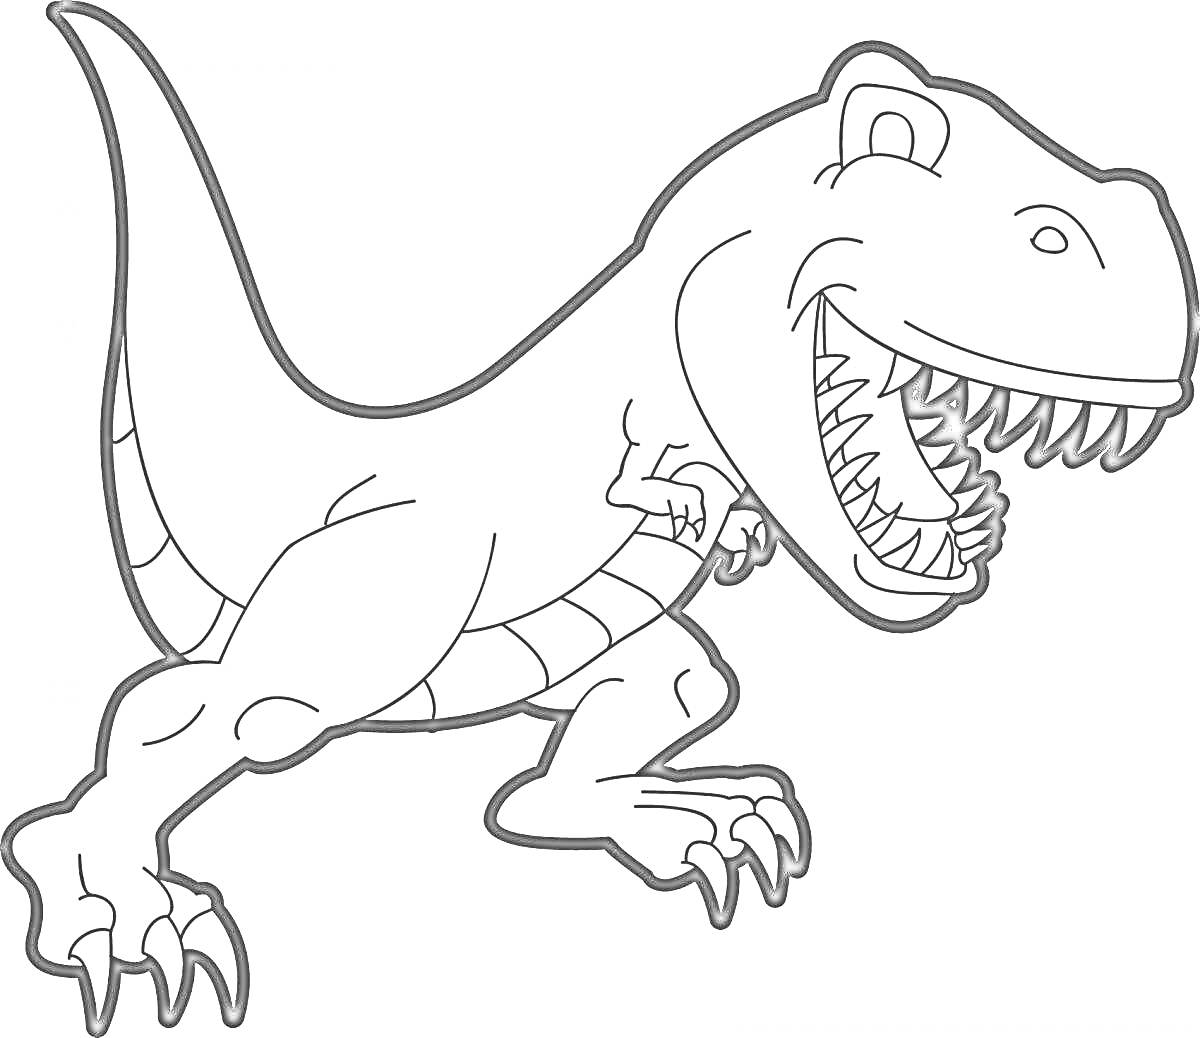 Раскраска Раскраска с изображением динозавра тираннозавра Рекса, в видимой динамической позе с широко открытой пастью и острыми зубами.